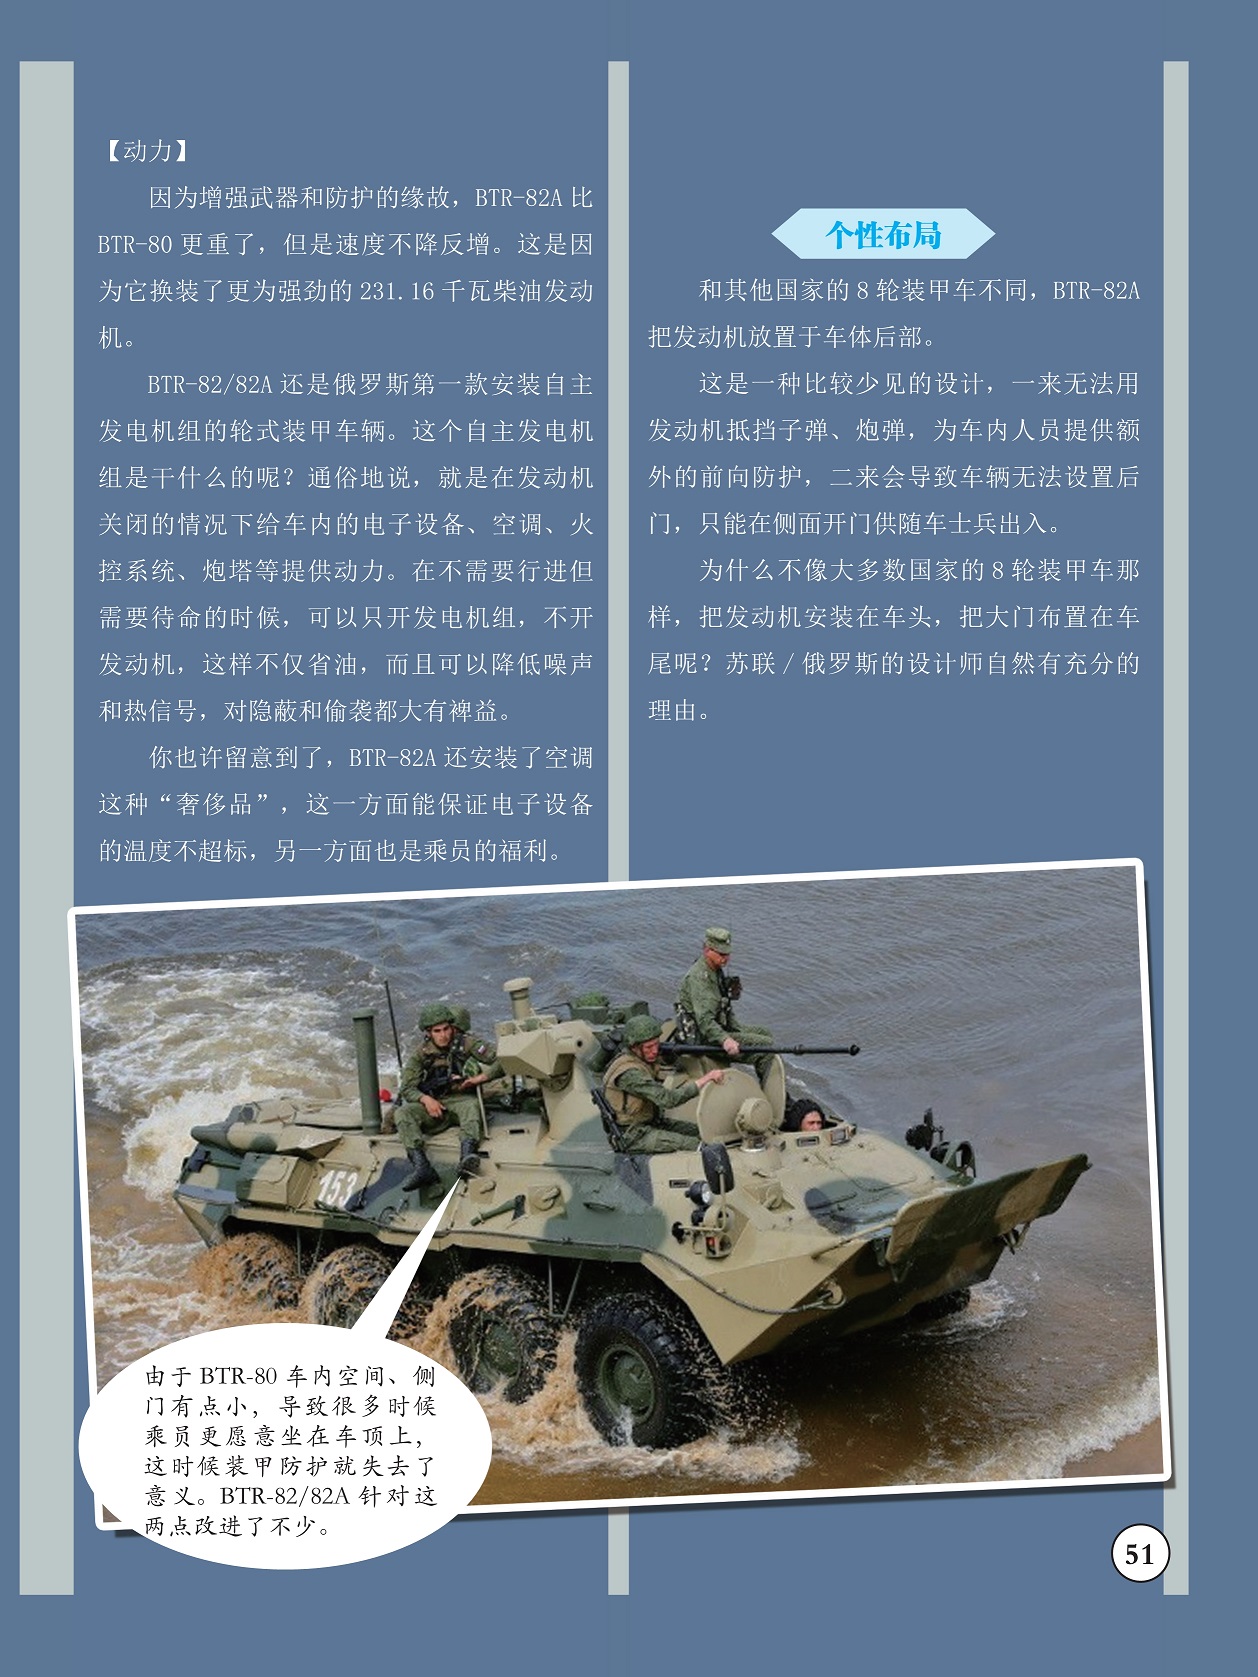 BTR-82A把发动机放置于车体后部,BTR-82A比BTR-80更重